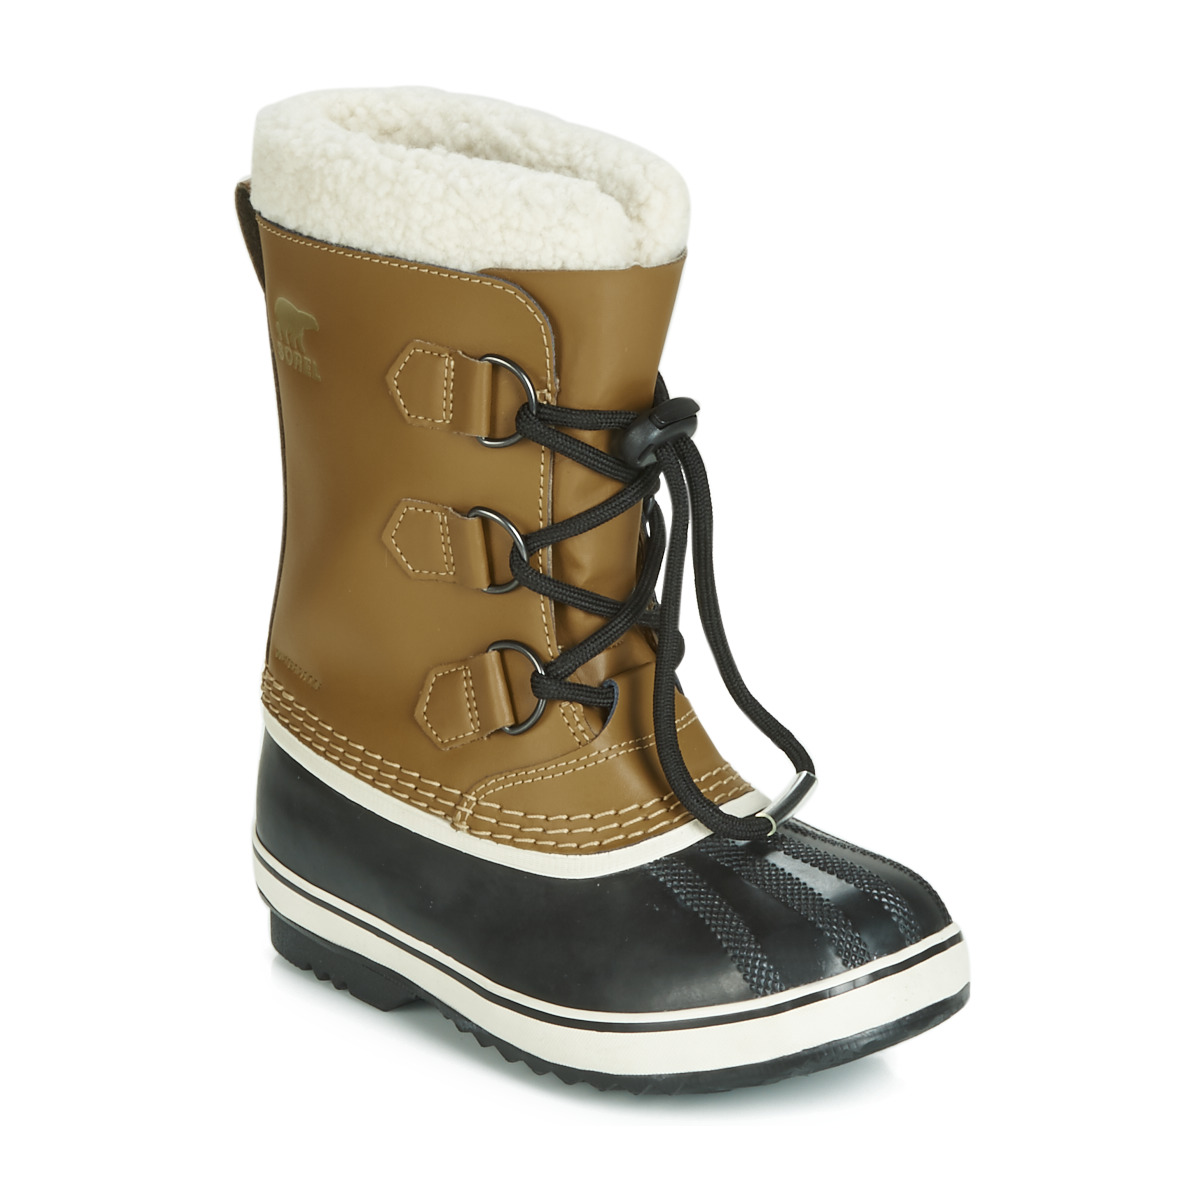 Sorel Snowboots - Maat 35 - Unisex - bruin/zwart/wit